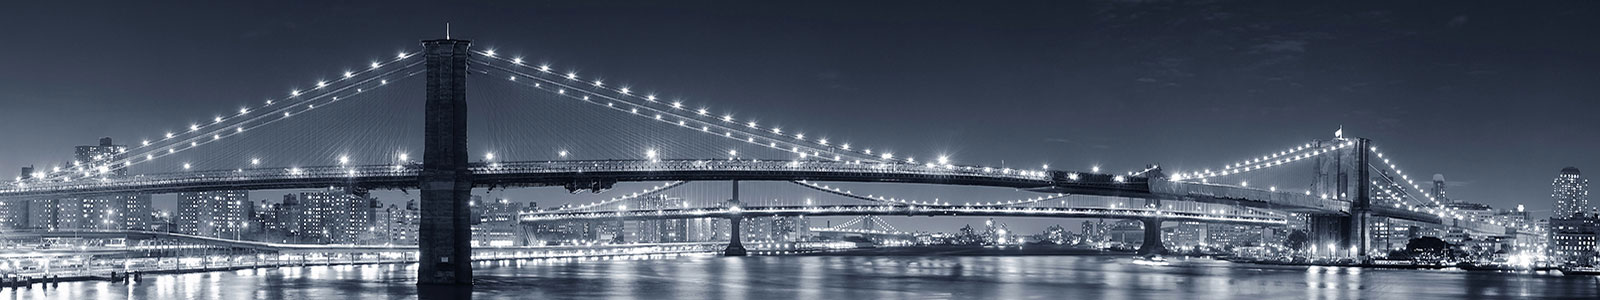 №1363 - Бруклинский мост над водной гладью в черно-белых тонах